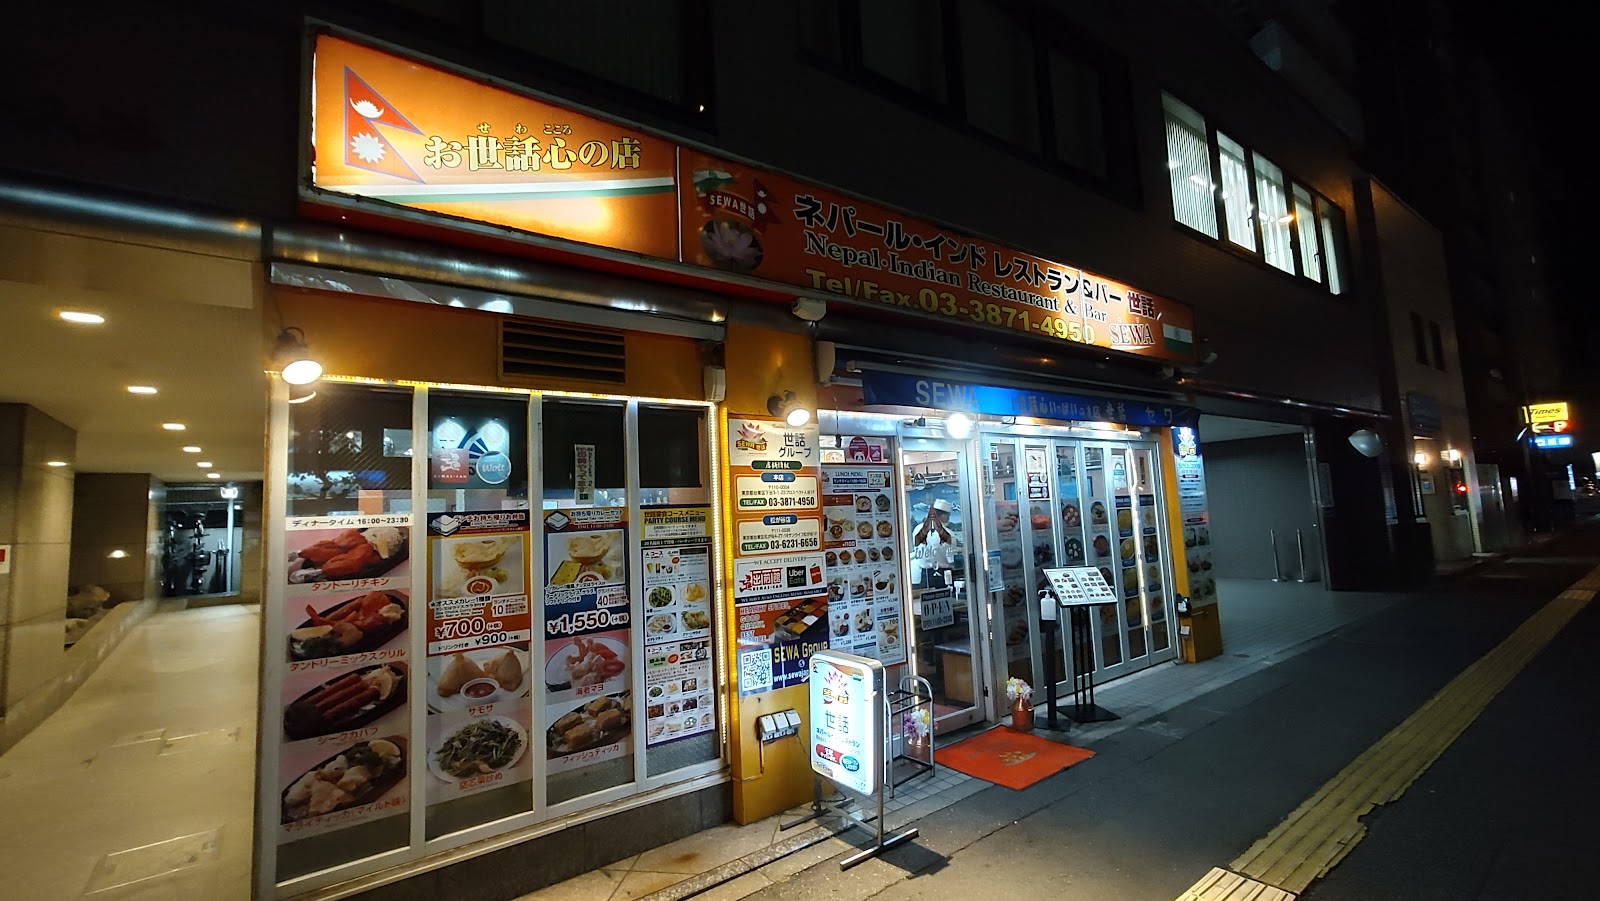 世話ネパール・インドレストラン SEWA下谷本 店のイメージ